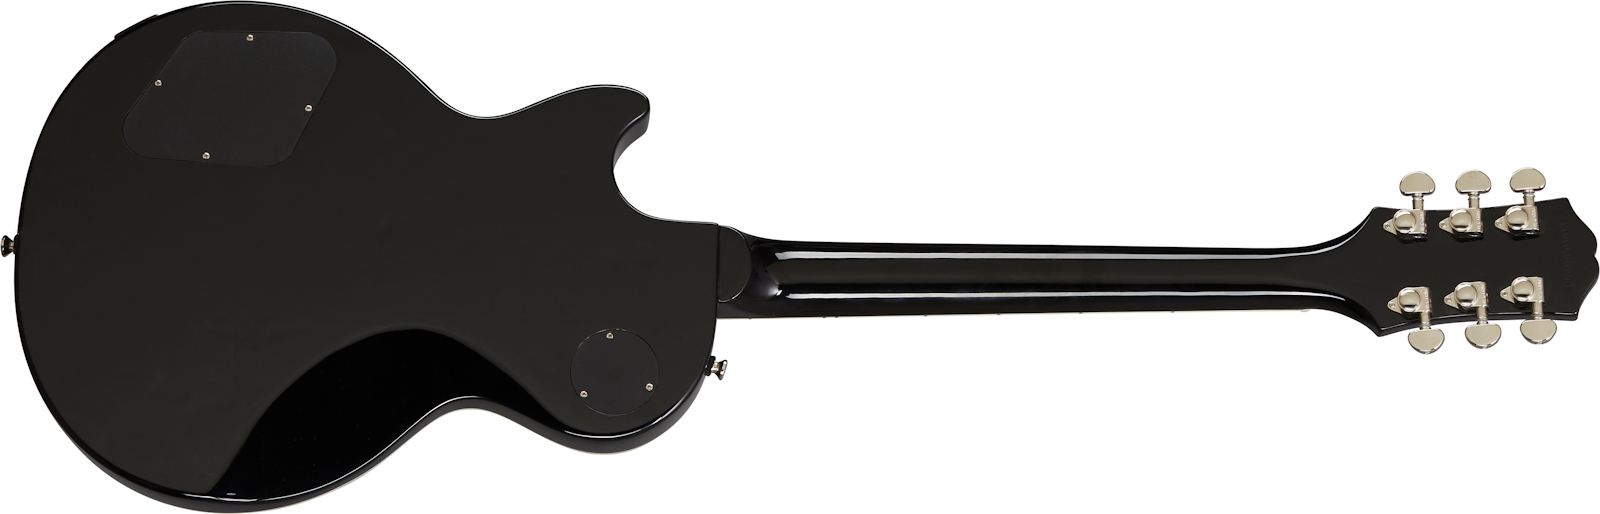 Epiphone Les Paul Muse Modern 2h Ht Lau - Jet Black Metallic - Guitarra eléctrica de corte único. - Variation 2